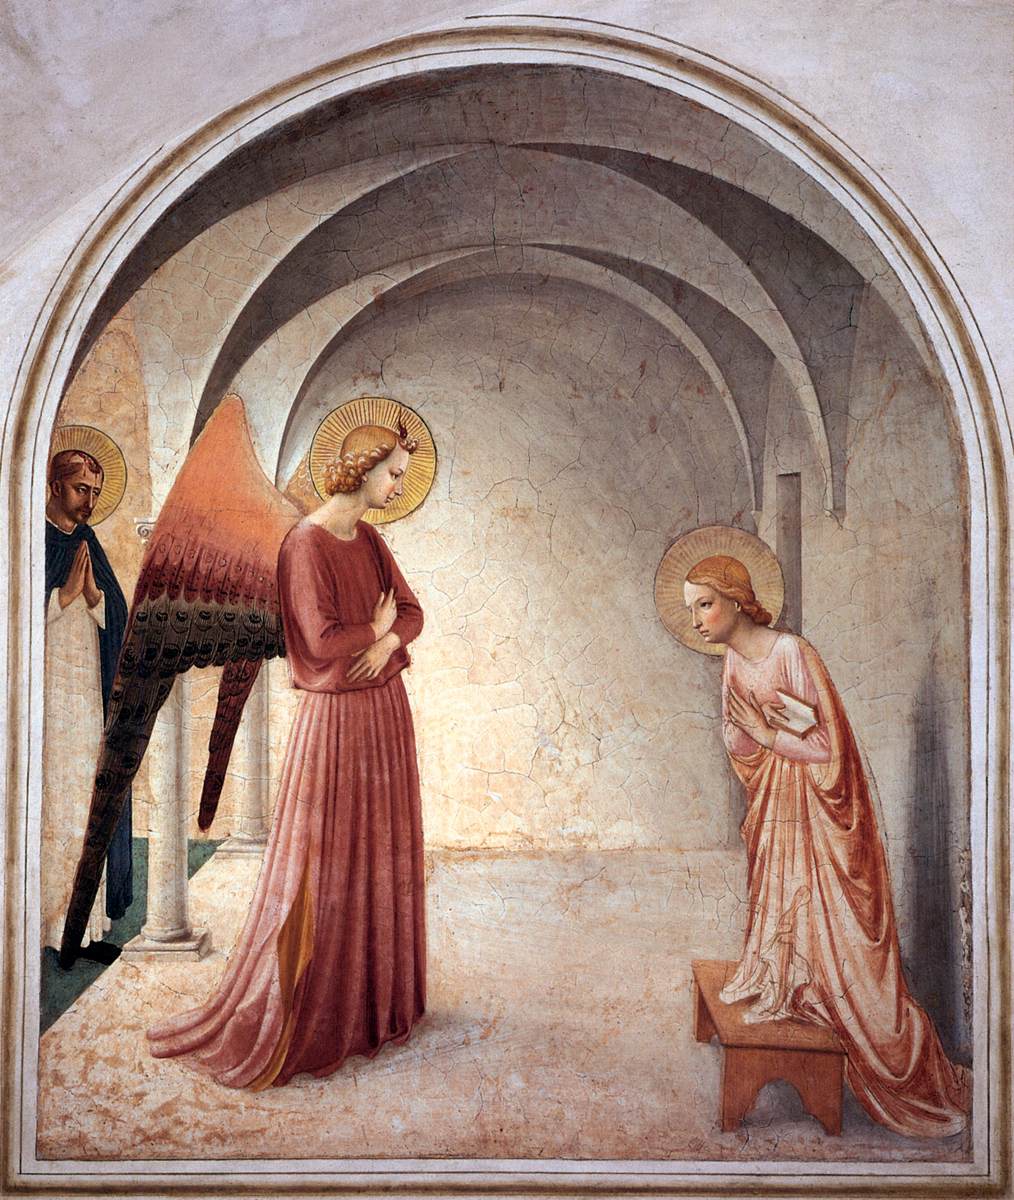   Beato Angelico, Annunciazione, 1438-40, Convento di San Marco, Firenze